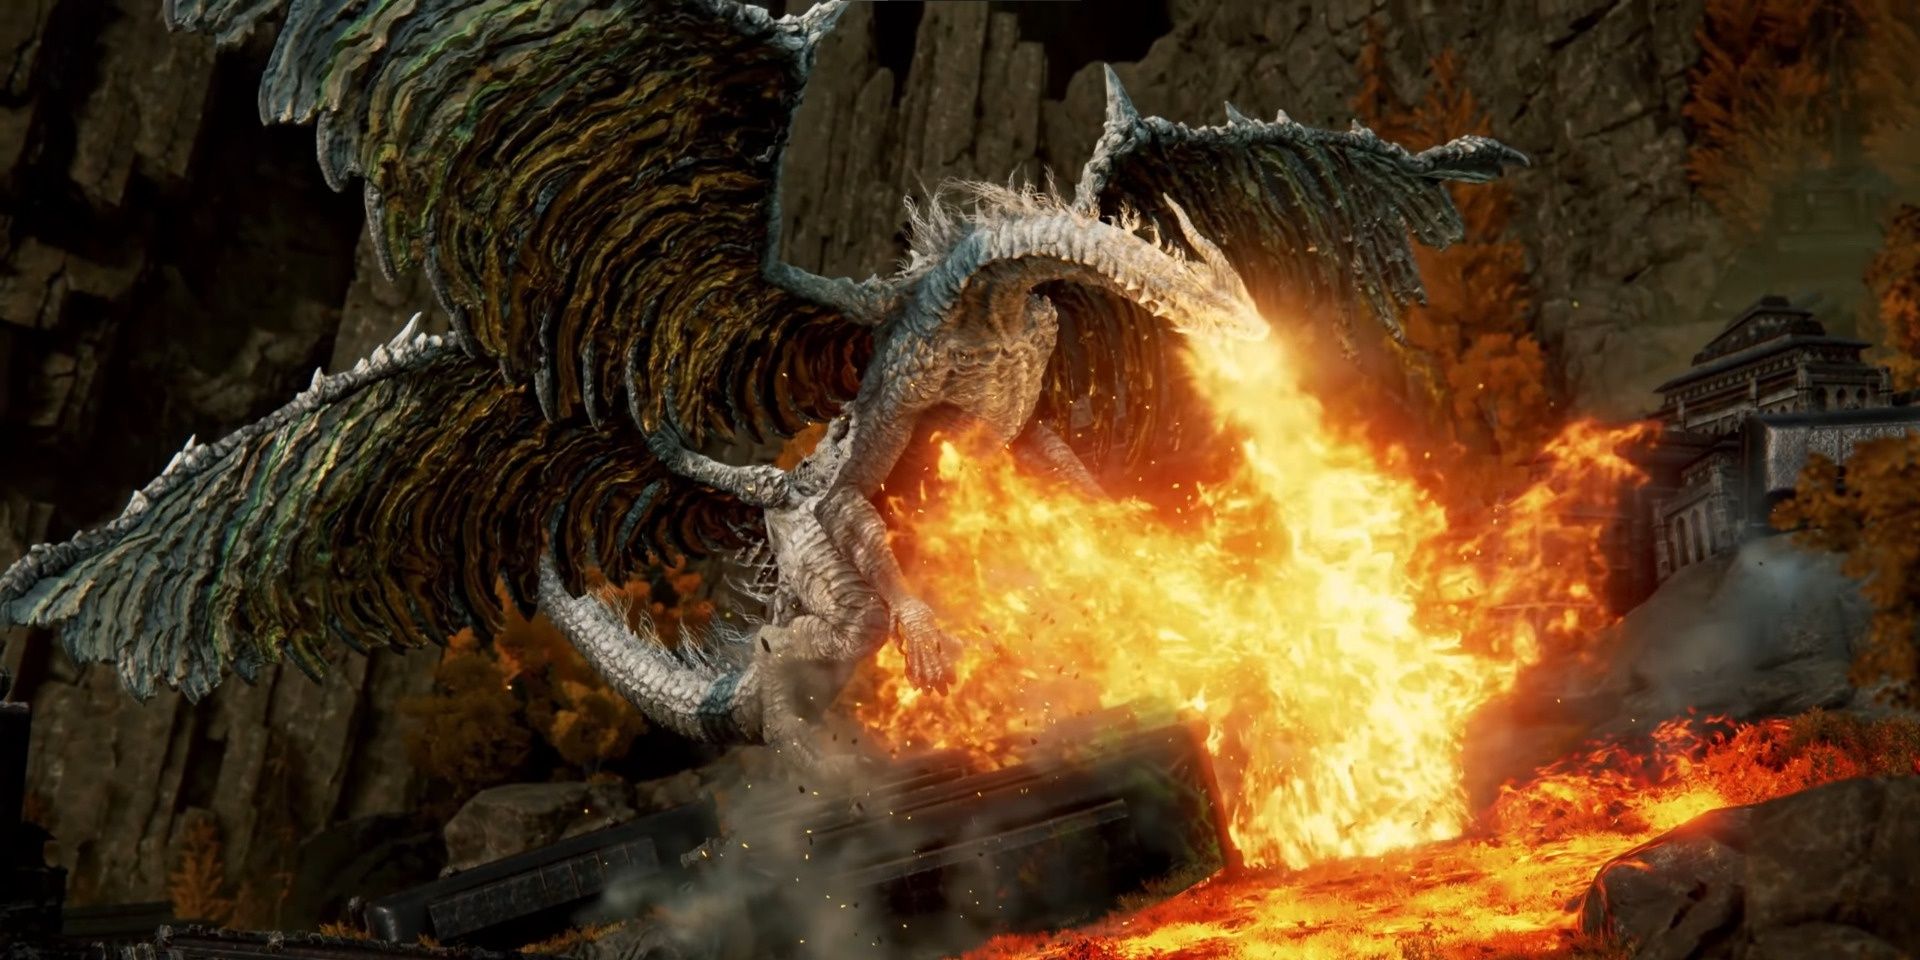 A huge dragon breathing fire